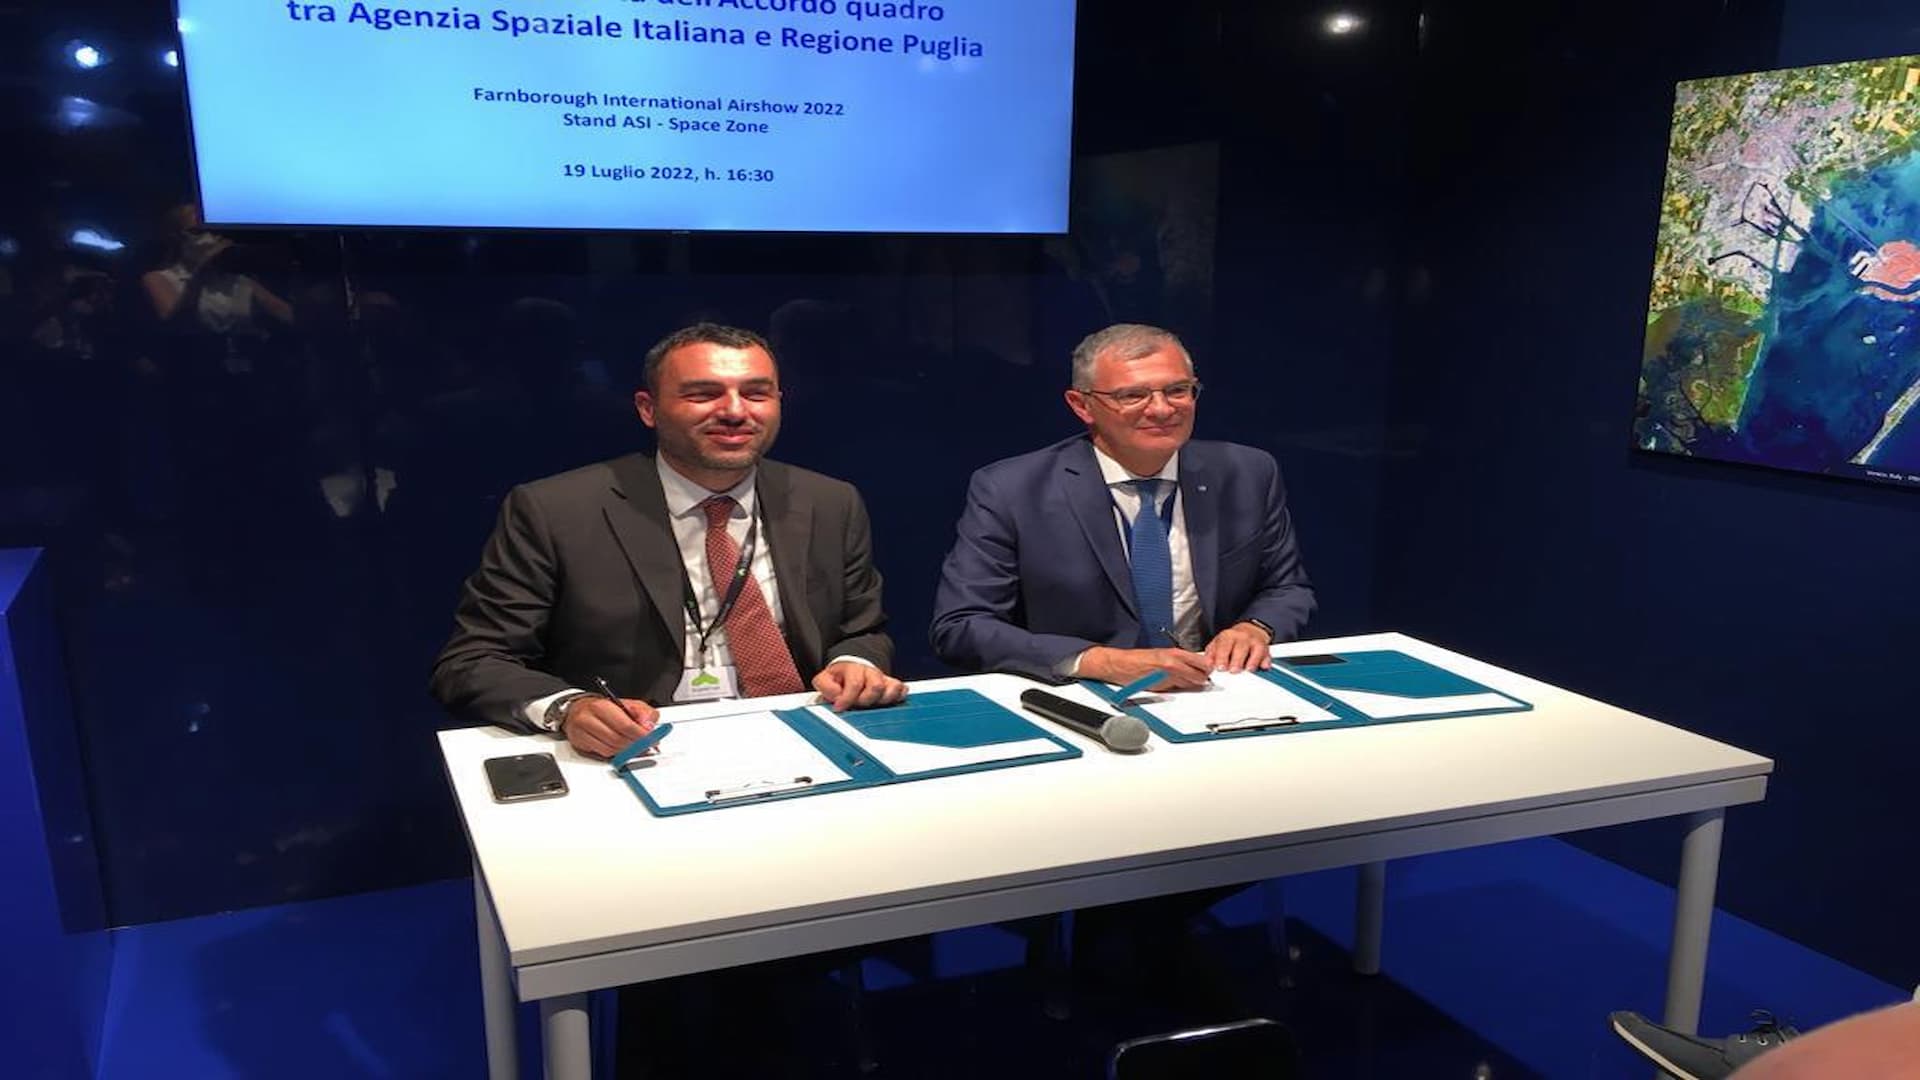 Sottoscritto l’Accordo Quadro tra Agenzia Spaziale Italiana e Regione Puglia